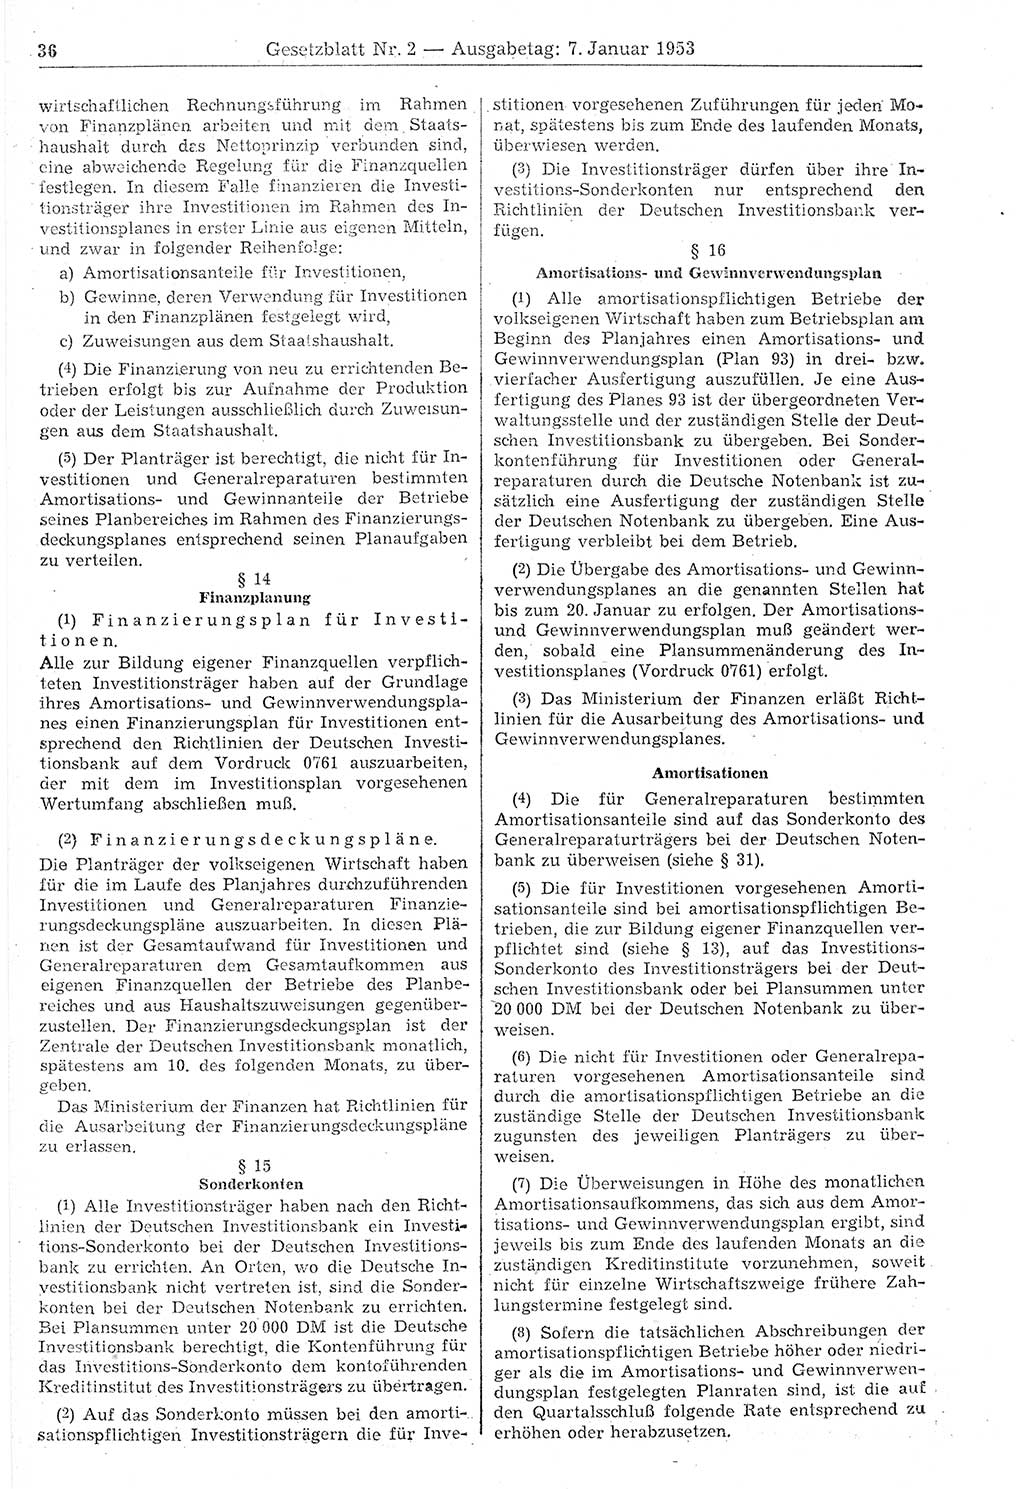 Gesetzblatt (GBl.) der Deutschen Demokratischen Republik (DDR) 1953, Seite 36 (GBl. DDR 1953, S. 36)